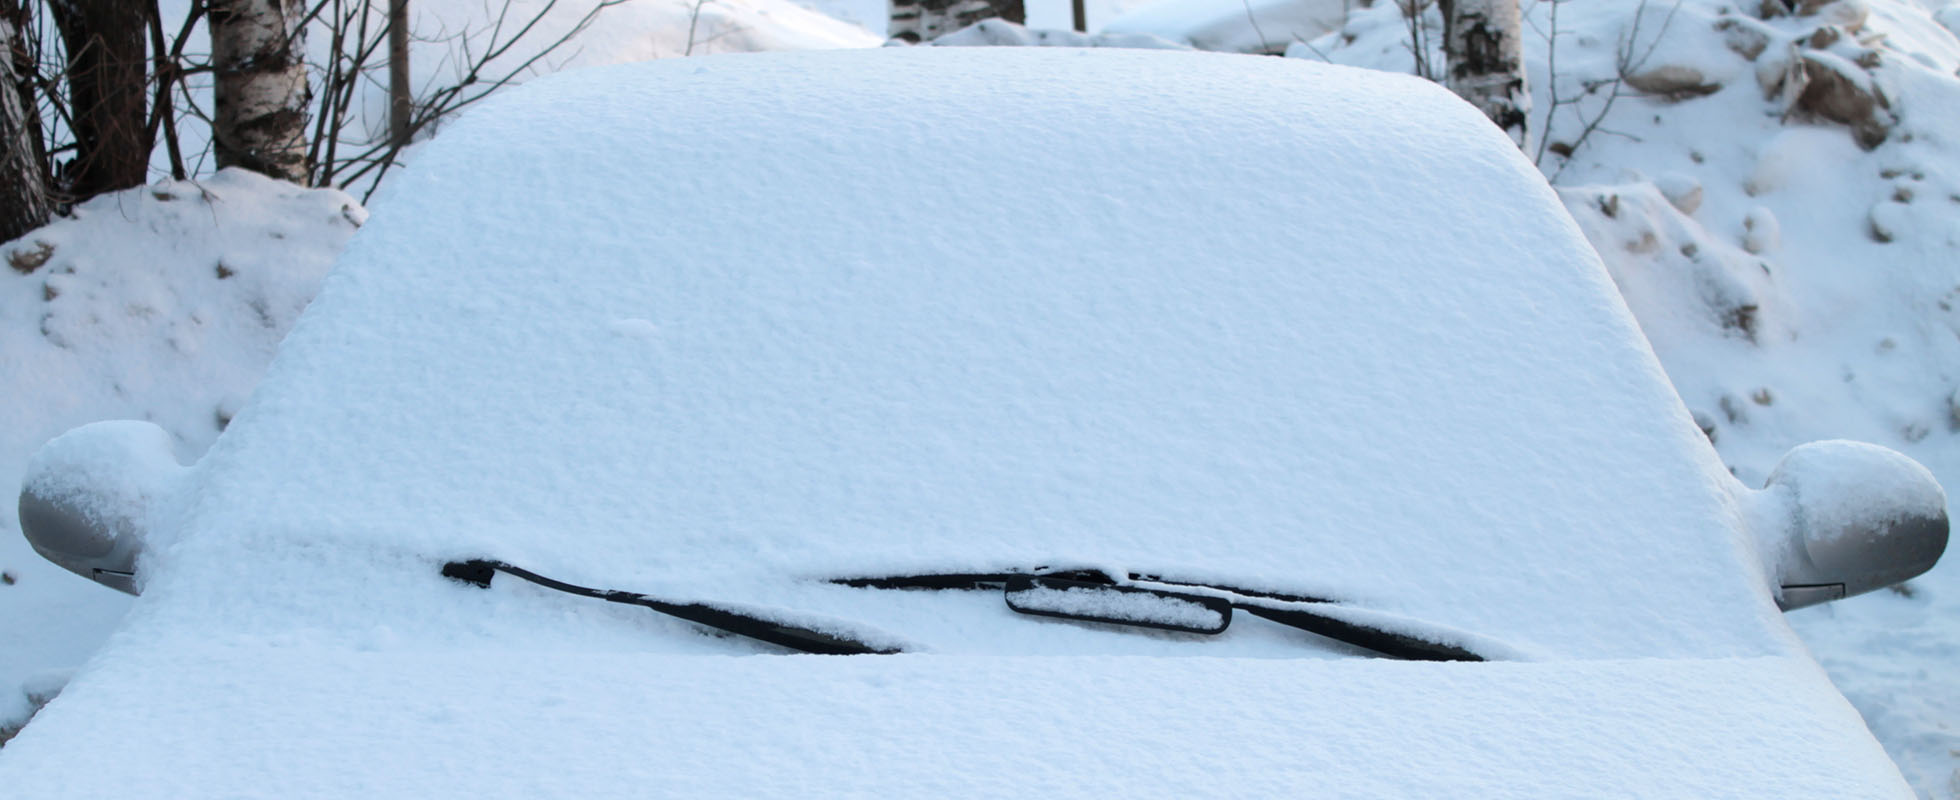 Pare-brise de voiture recouvert de neige